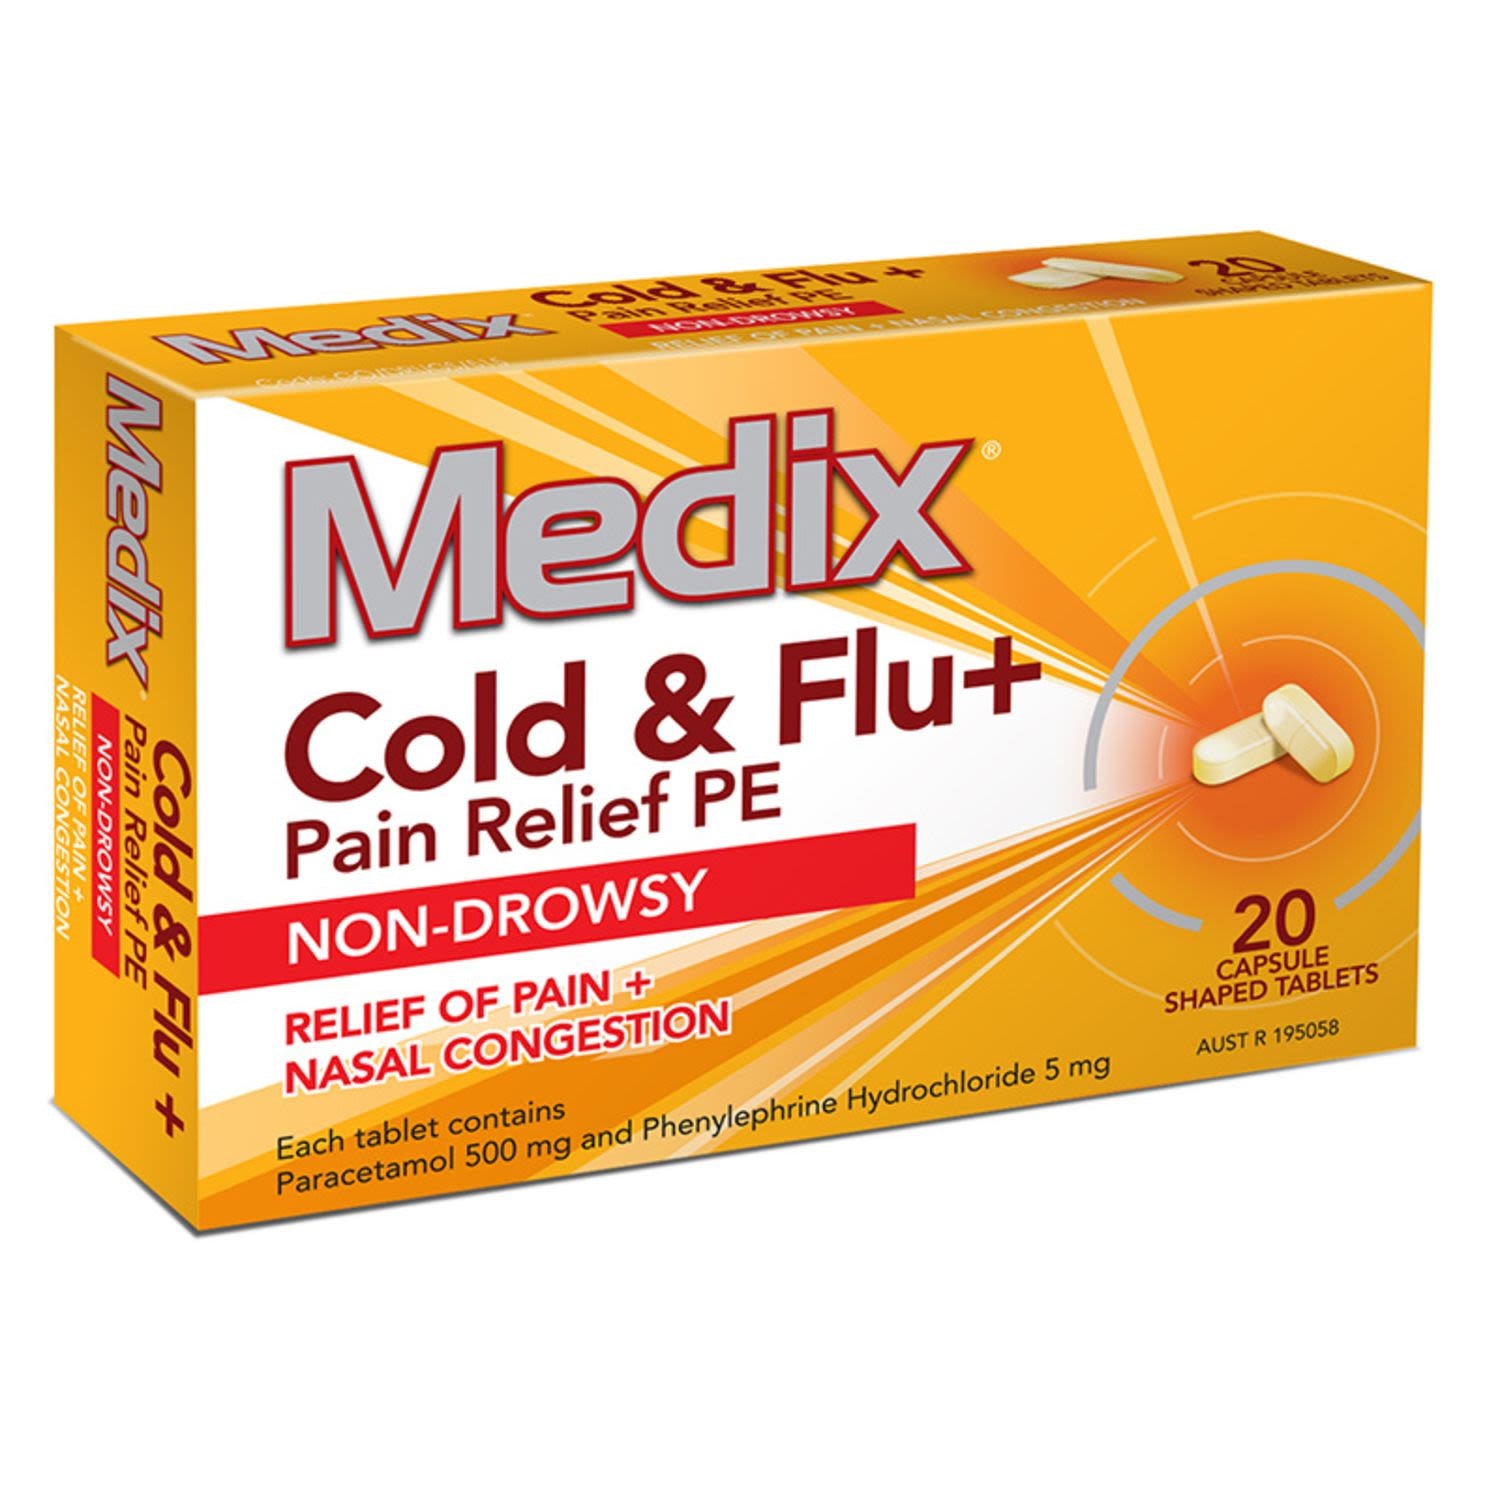 Medix Cold & Flu + Pain Relief PE,  Non Drowsy 20